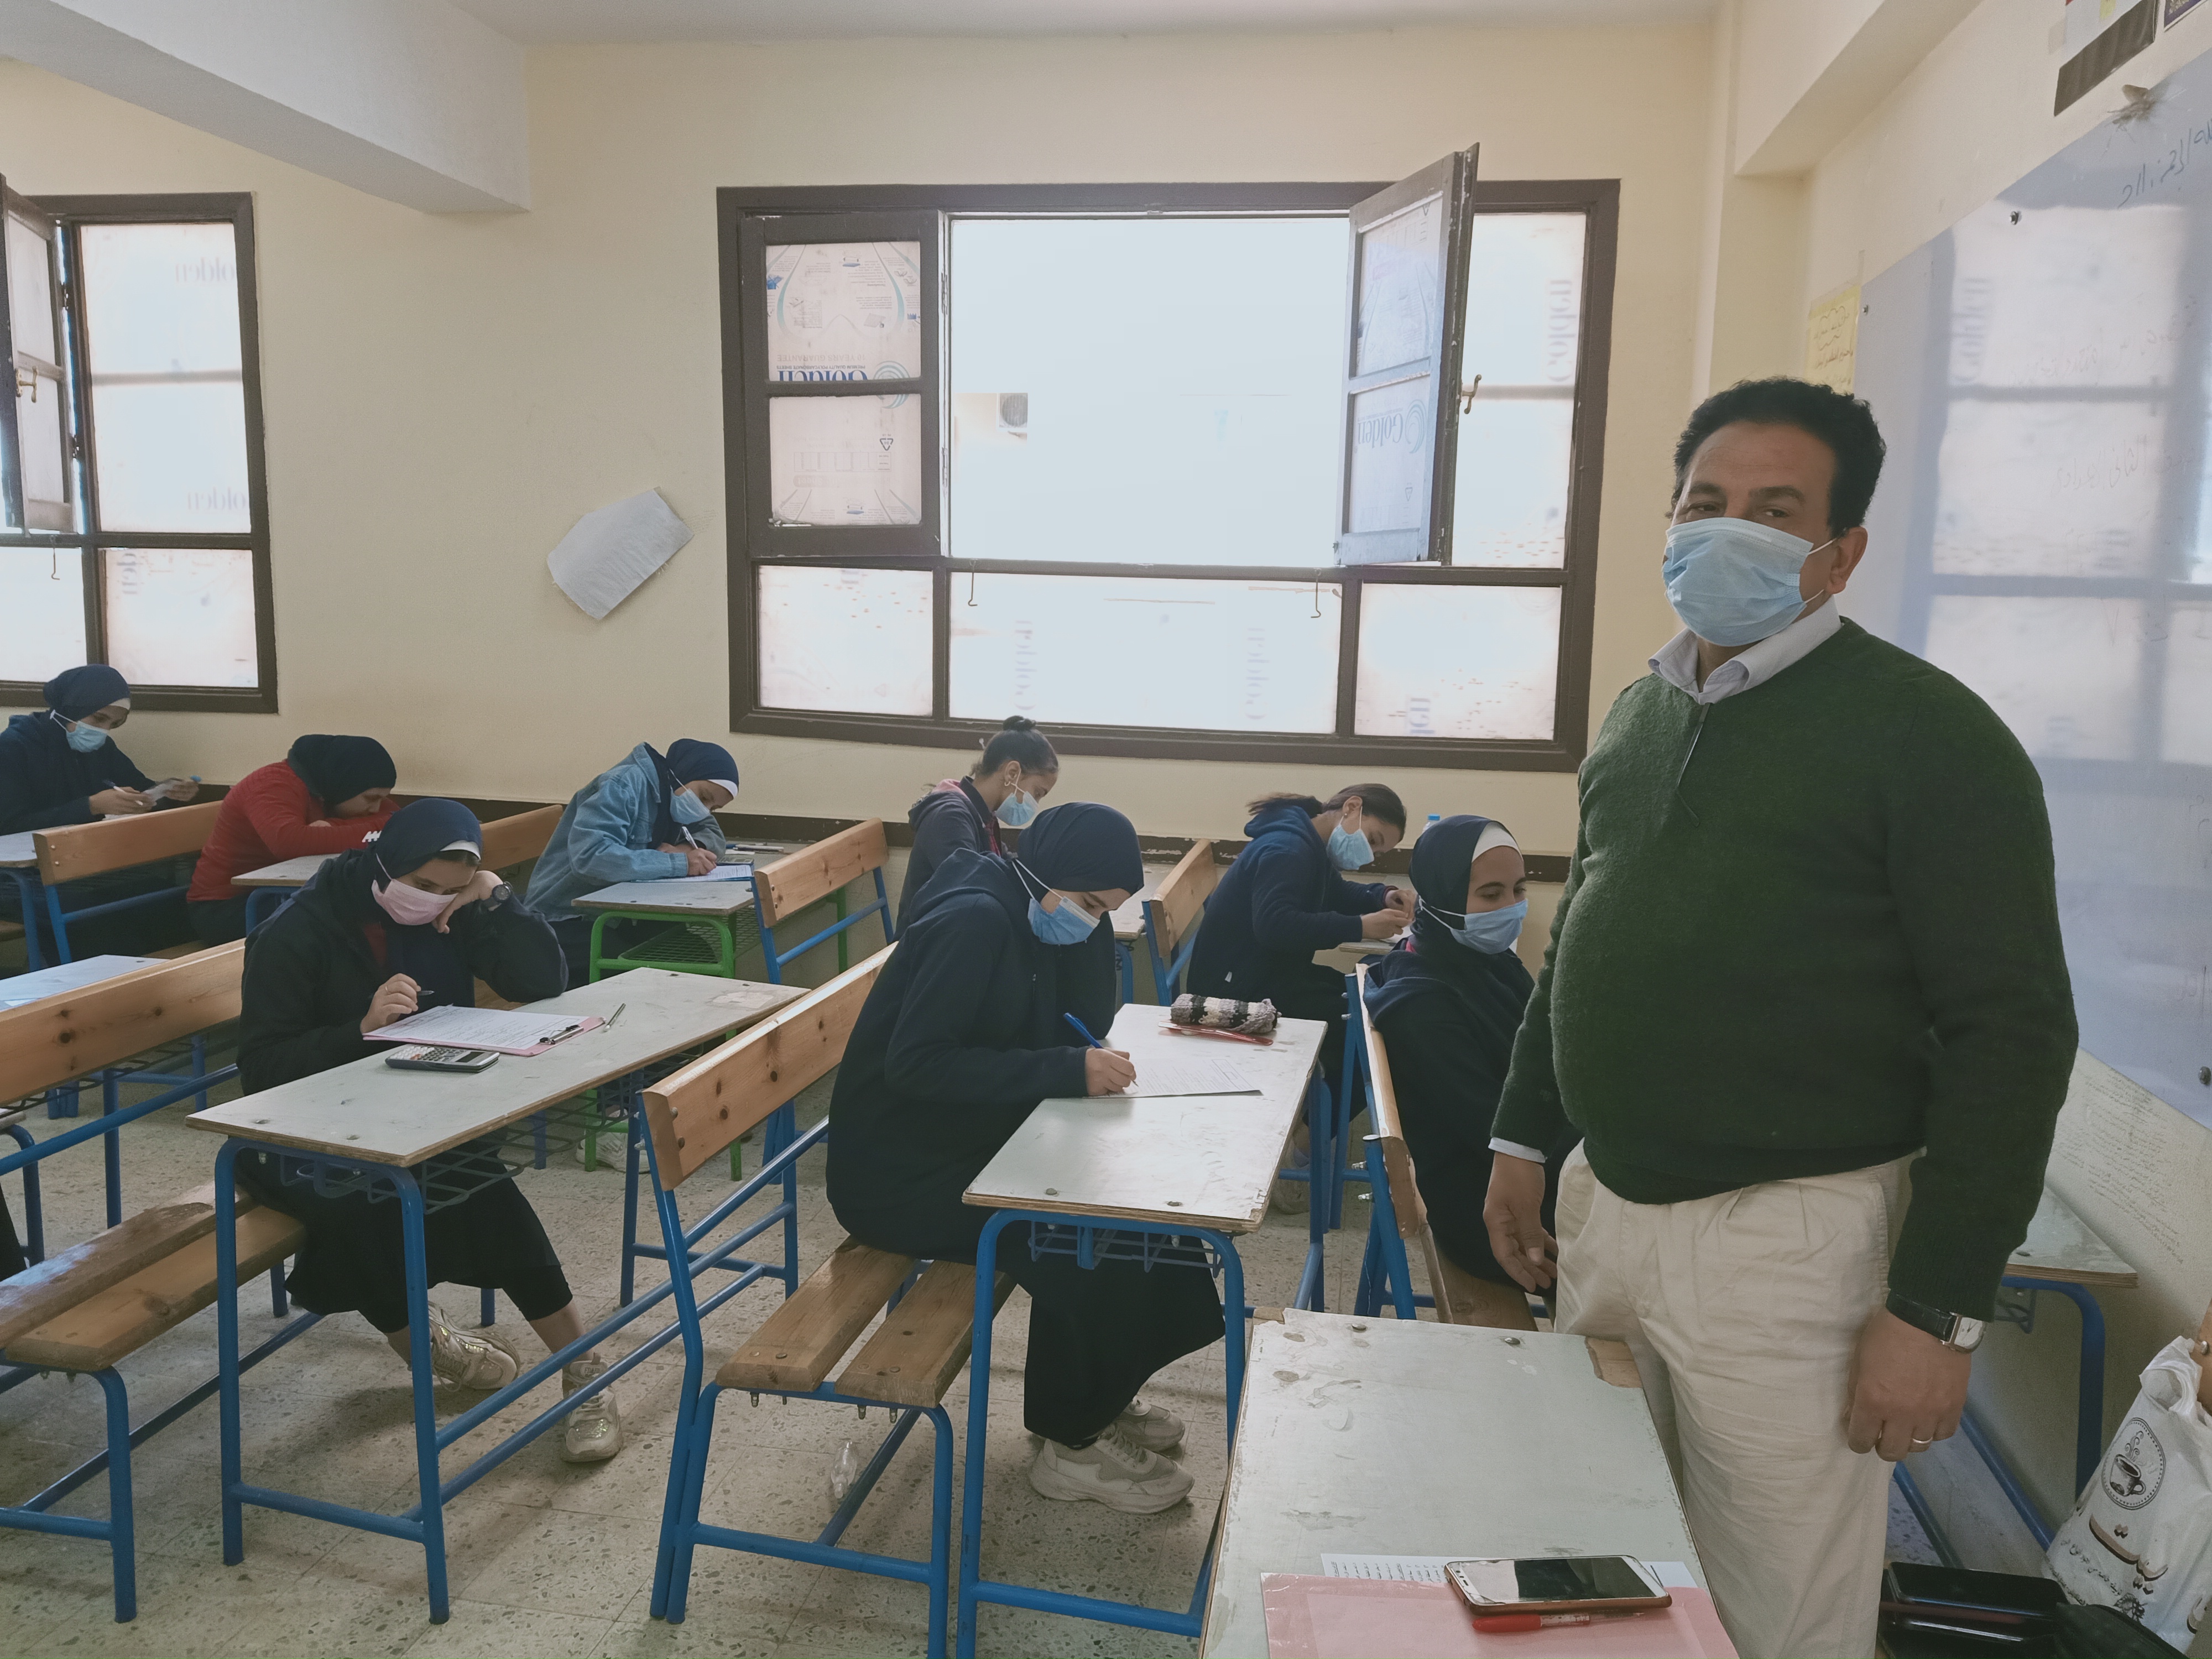 طلاب الصف الثانى الإعدادى يؤدون امتحان شهر مارس المجمع